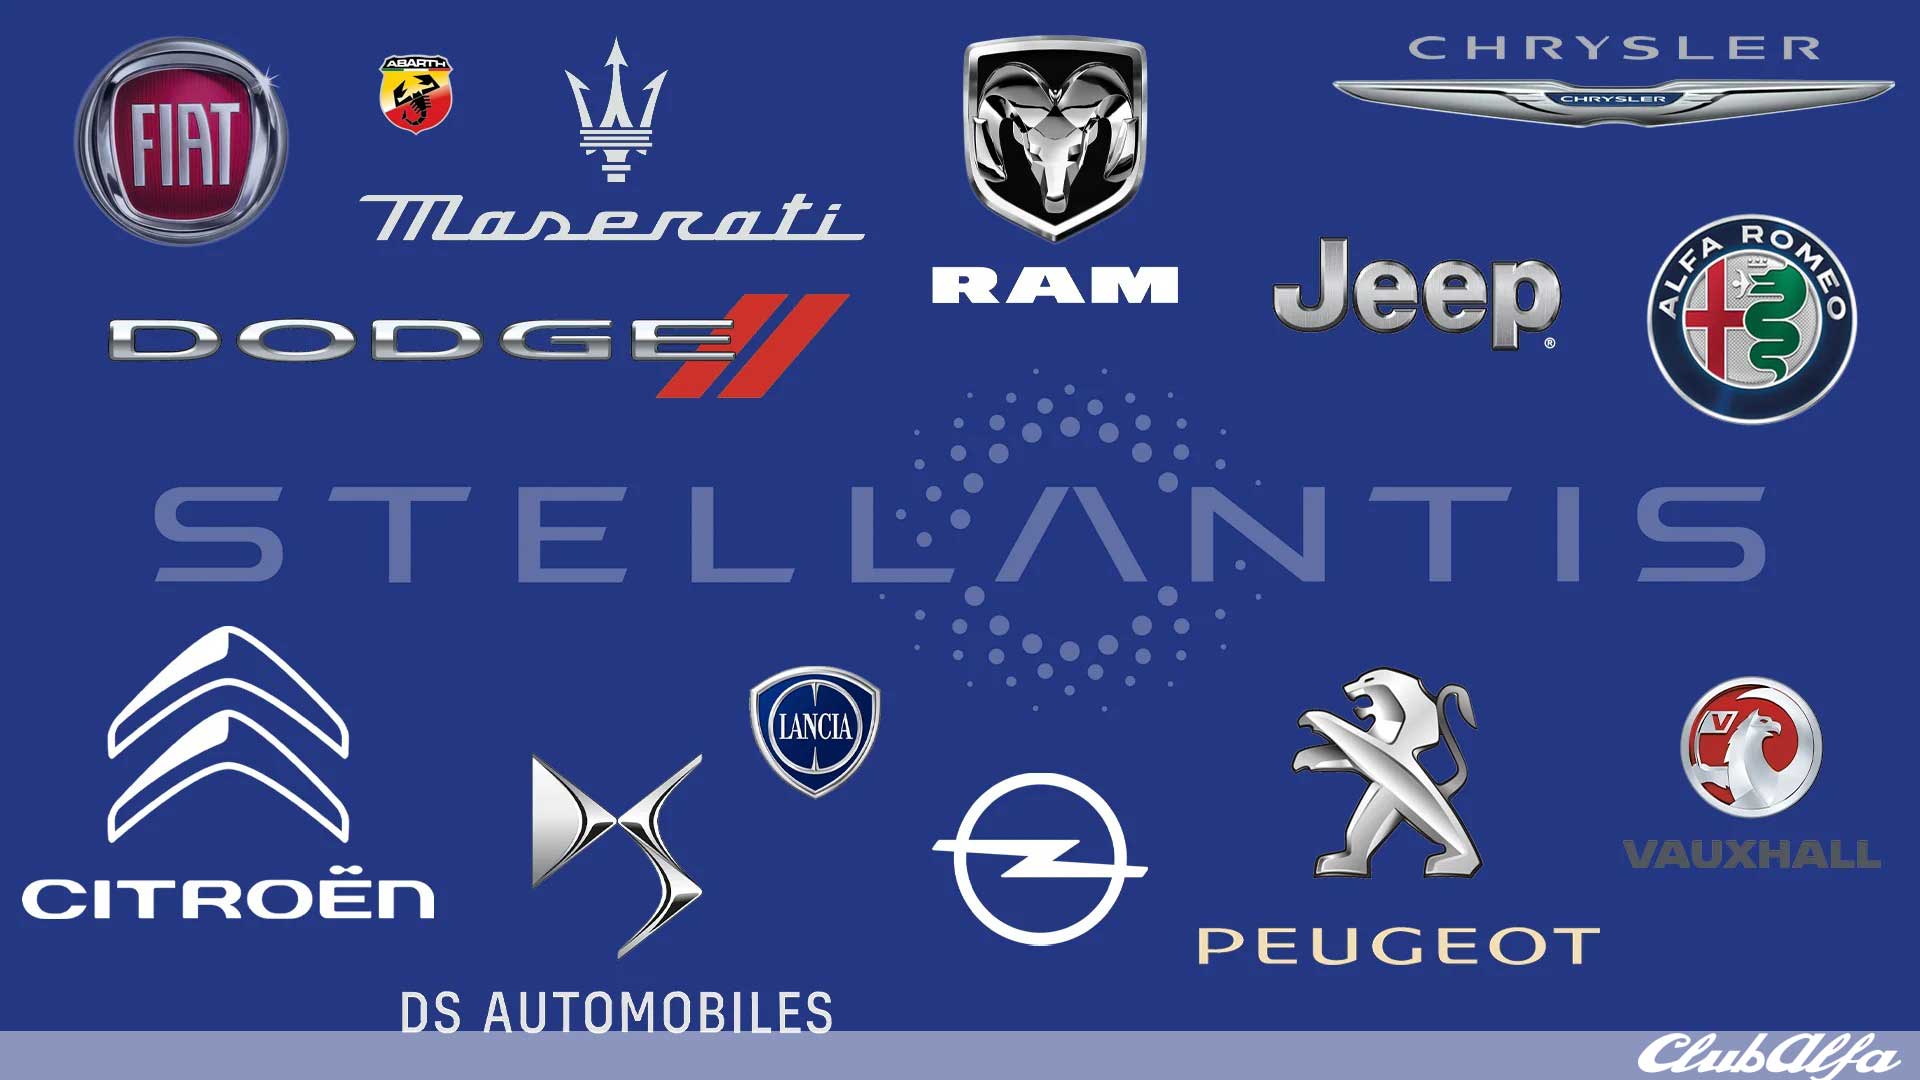 Stellantis: in Spagna sperano nella Peugeot 208 - ClubAlfa.it